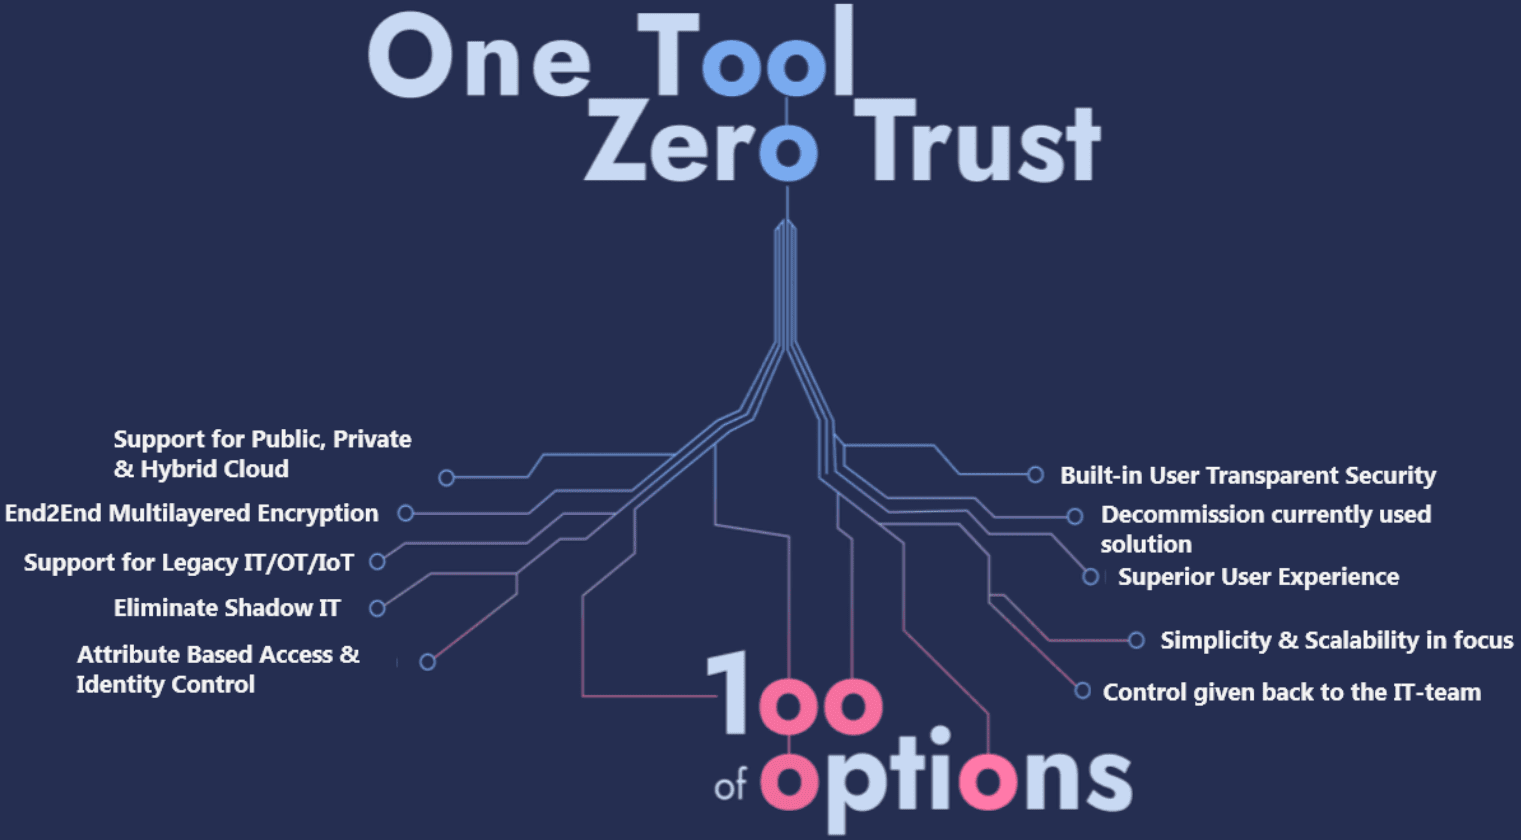 One Tool and Zero Trust